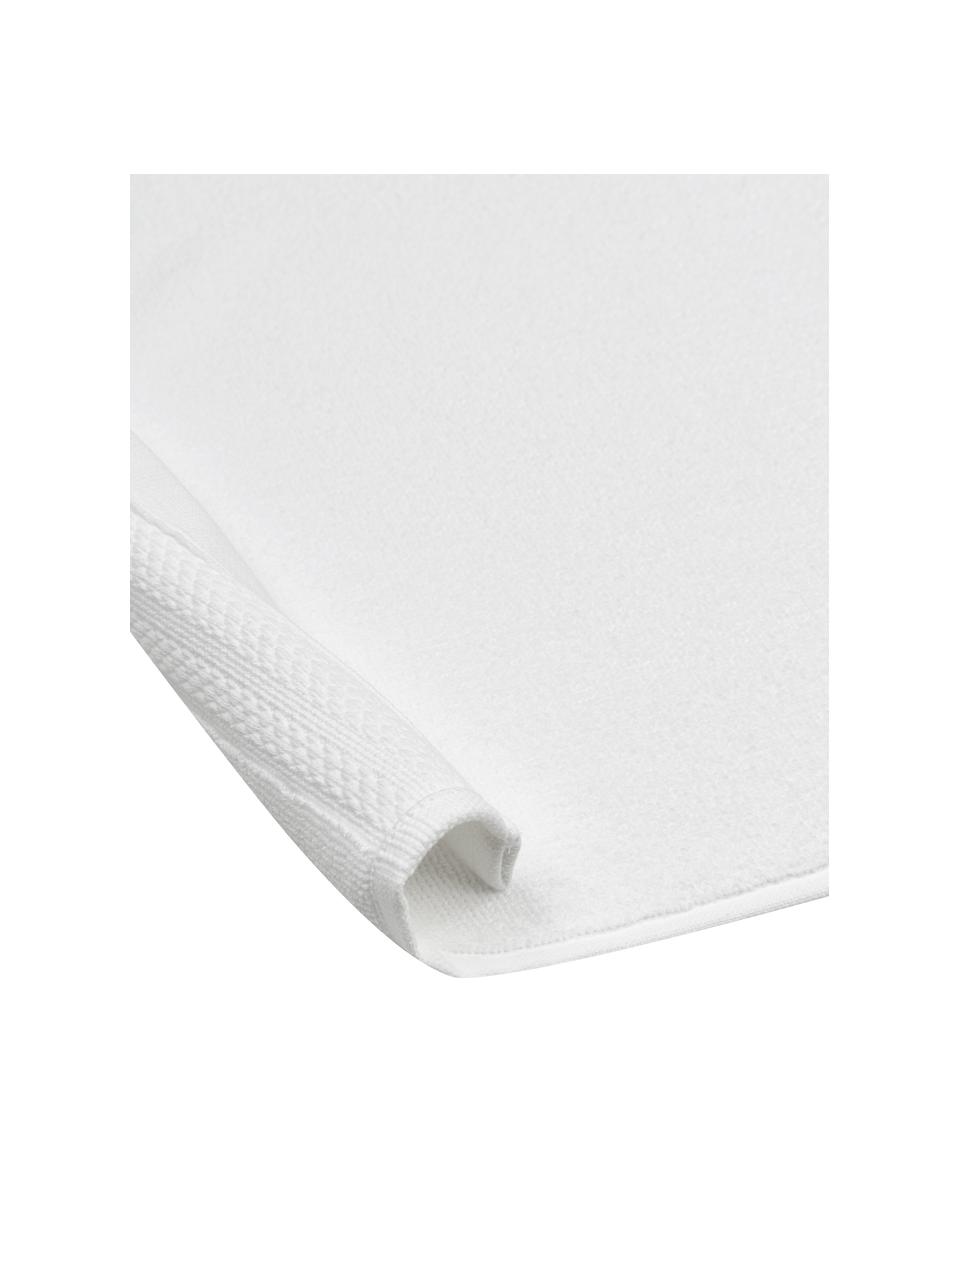 Dywanik łazienkowy z bawełny organicznej Premium, antypoślizgowy, Biały, S 70 x D 120 cm